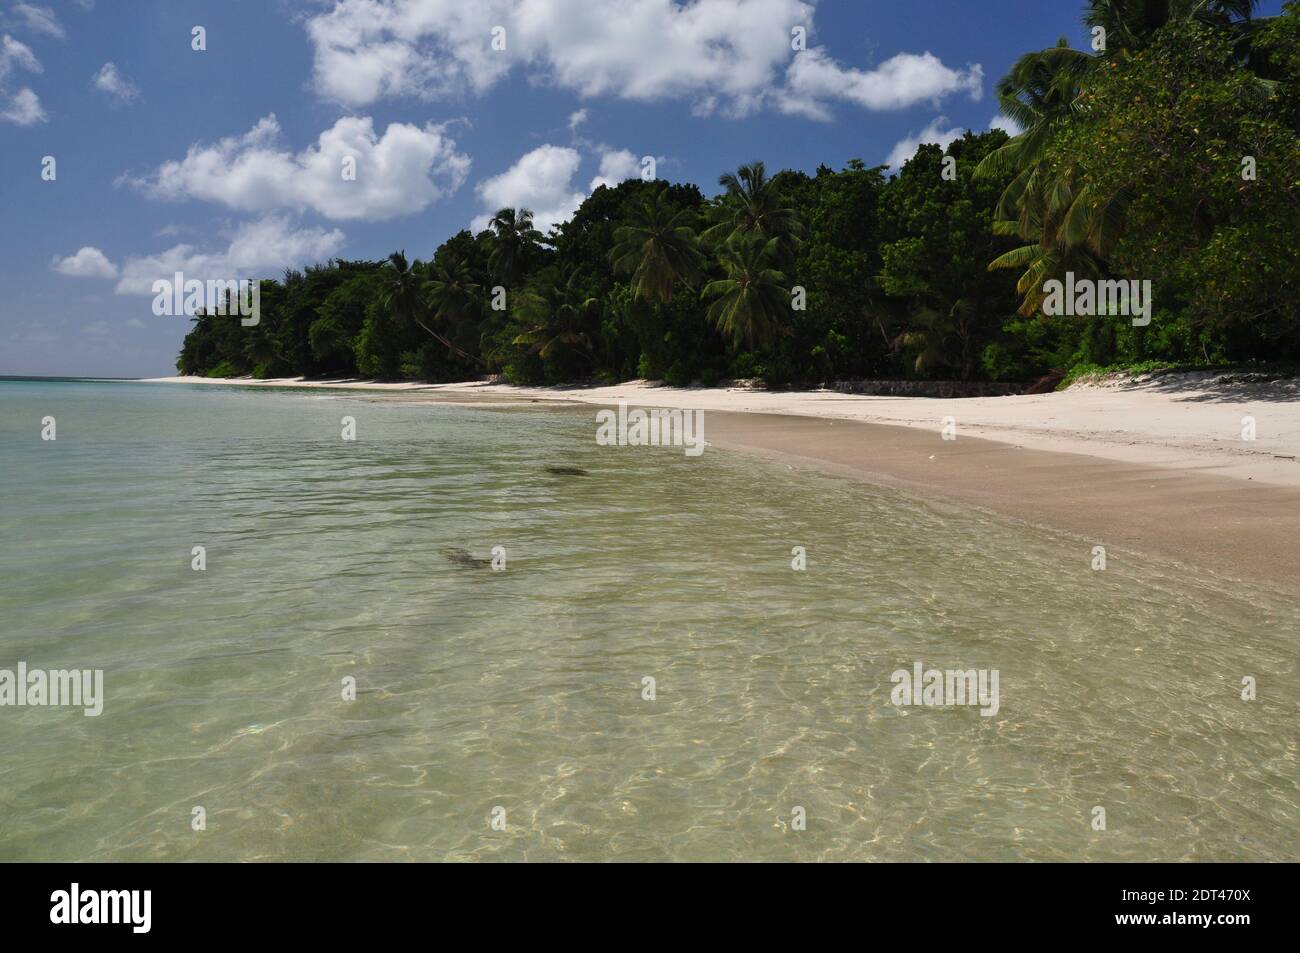 Spiaggia esotica con palme sull'isola di praslin, seychelles Foto Stock